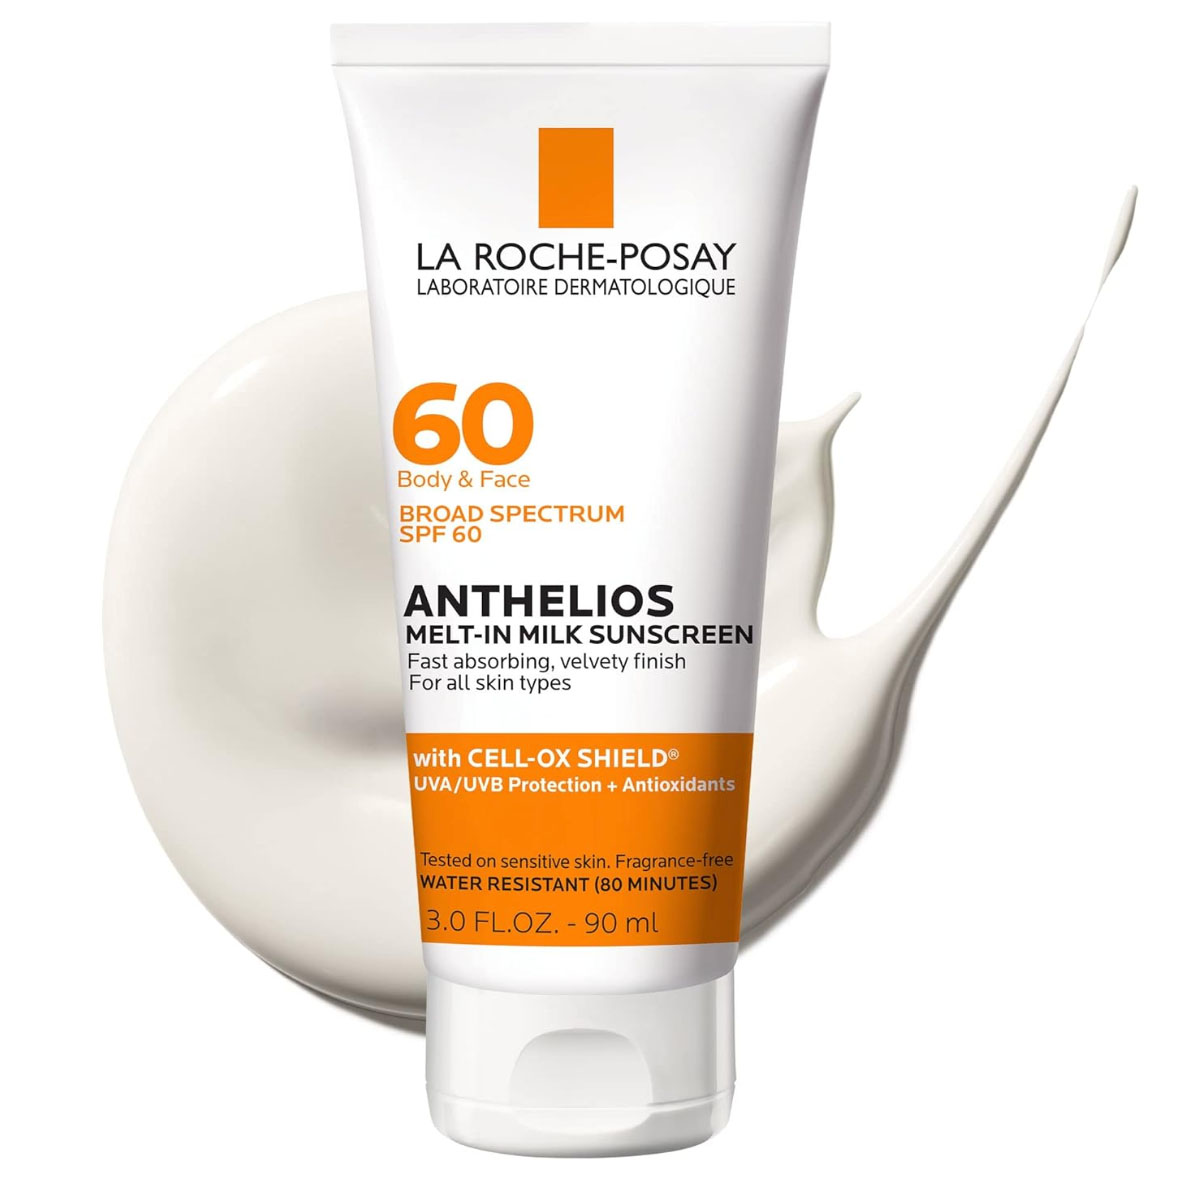 La Roche-Posay Sunscreen SPF 60 in white and orange bottle